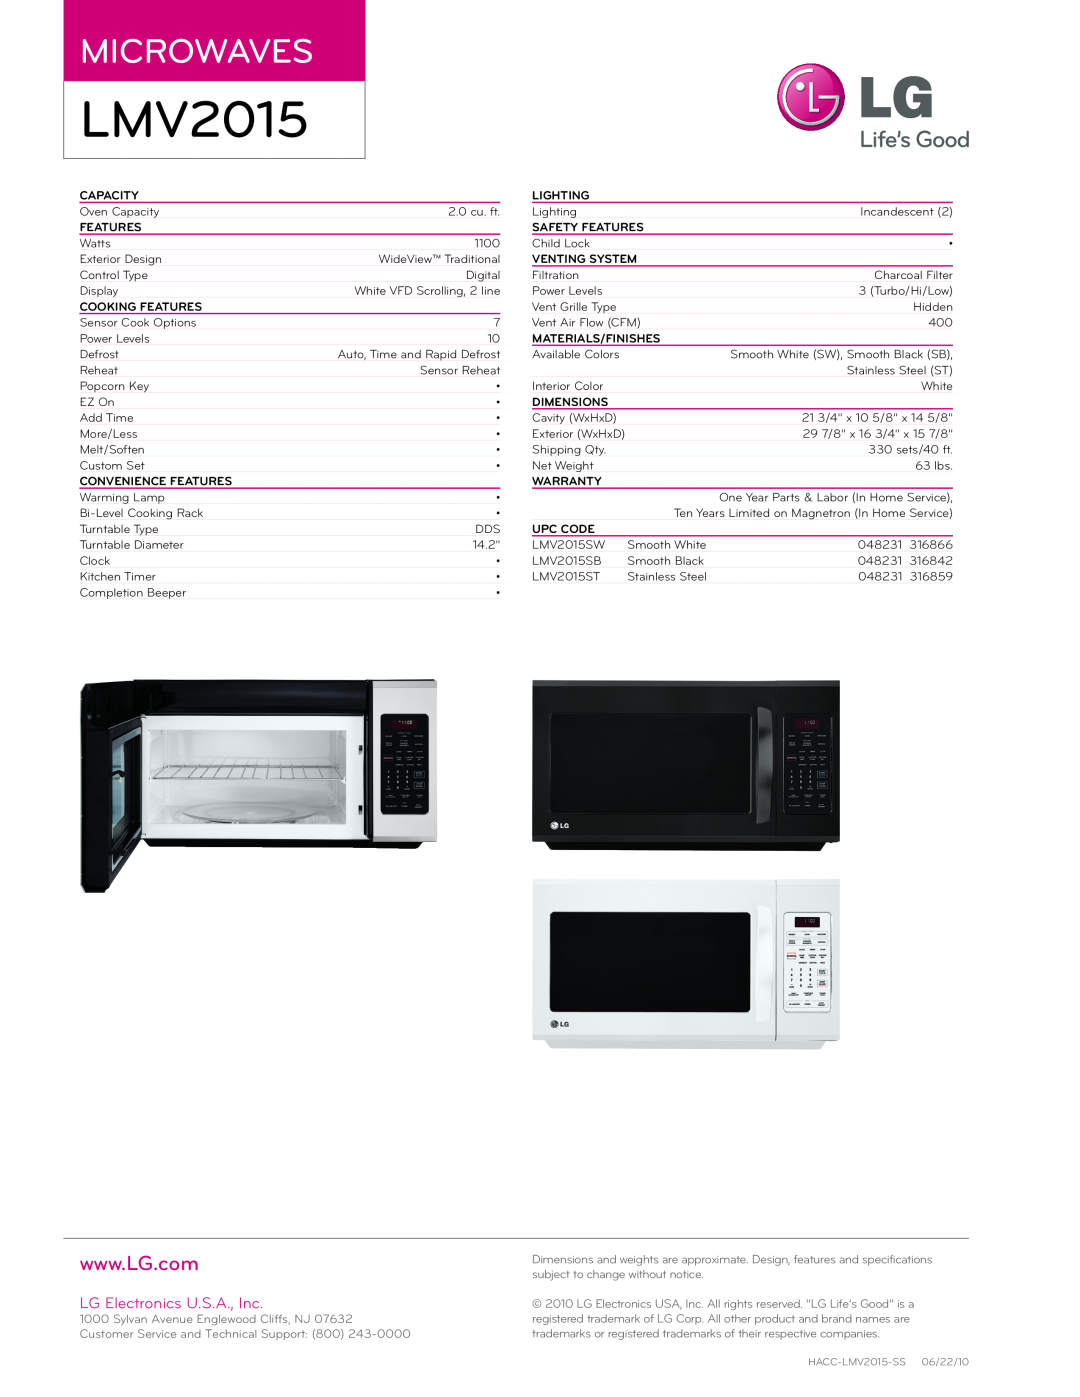 LG Electronics LMV2015 manual Microwaves, LG Electronics U.S.A., Inc 